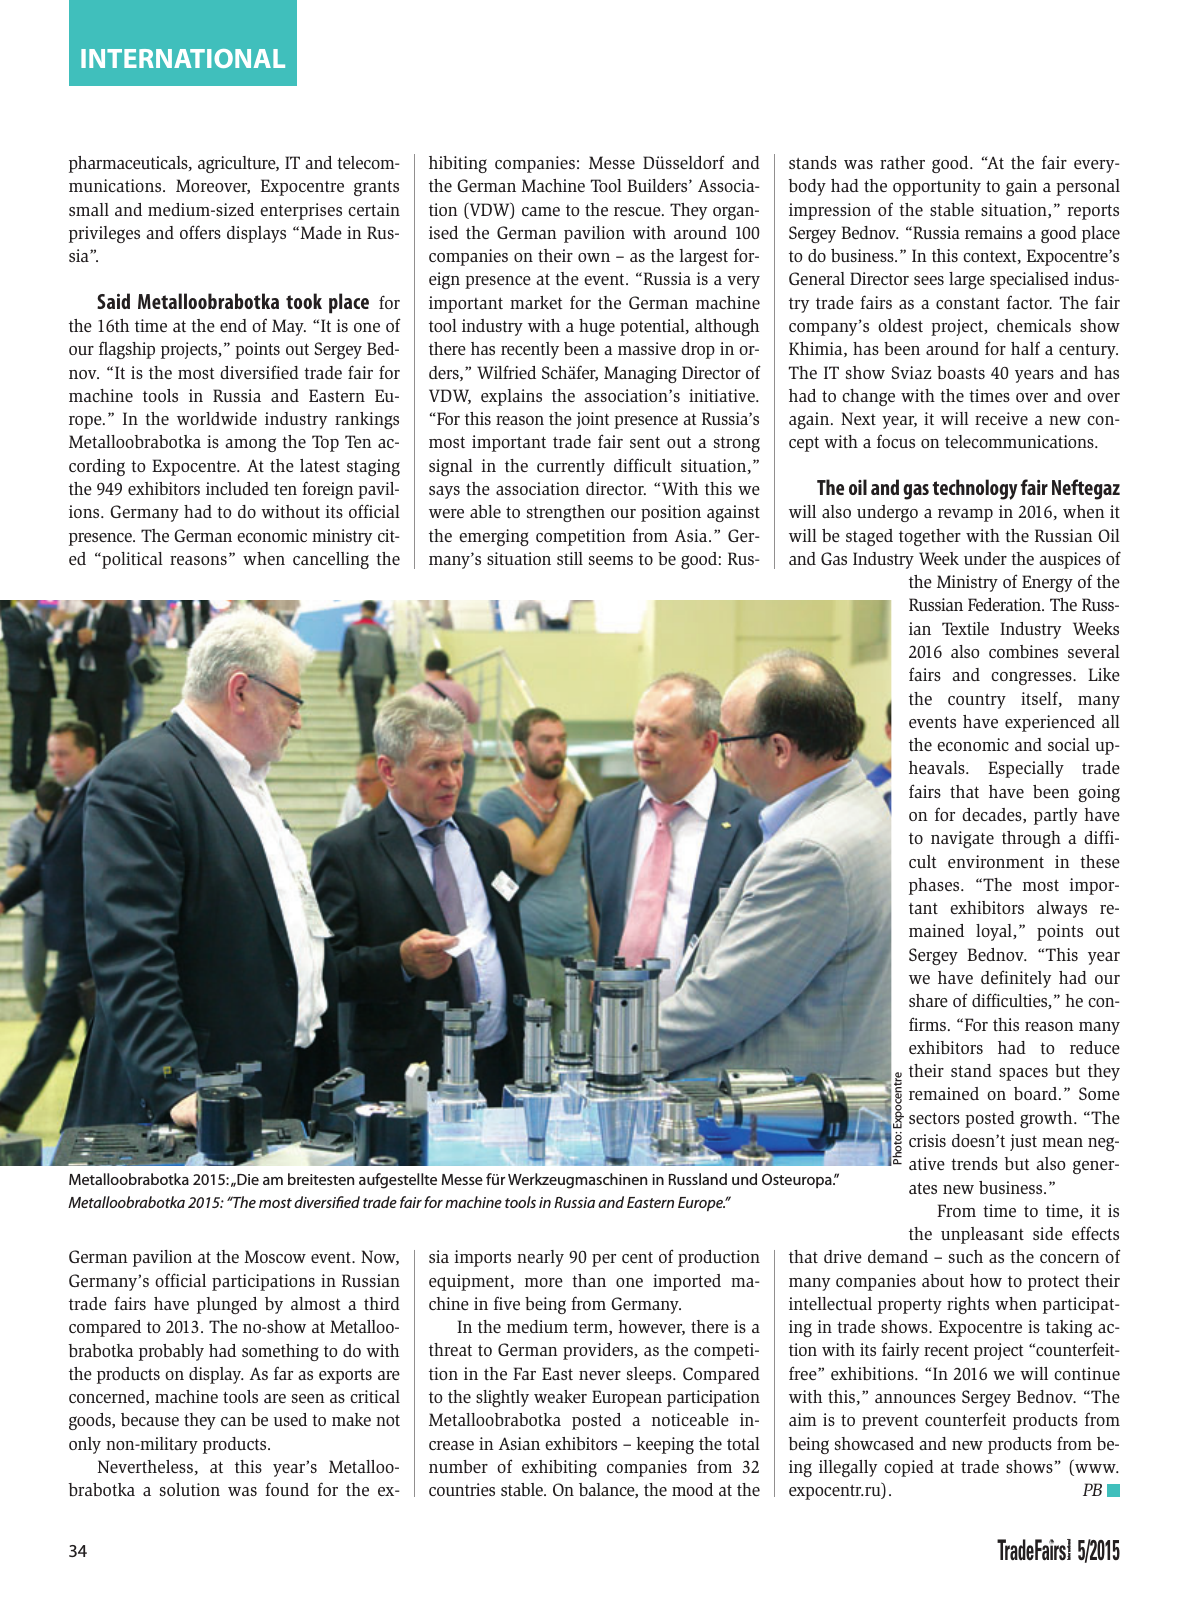 Vorschau TFI Trade-Fairs-International 05/2015 Seite 34